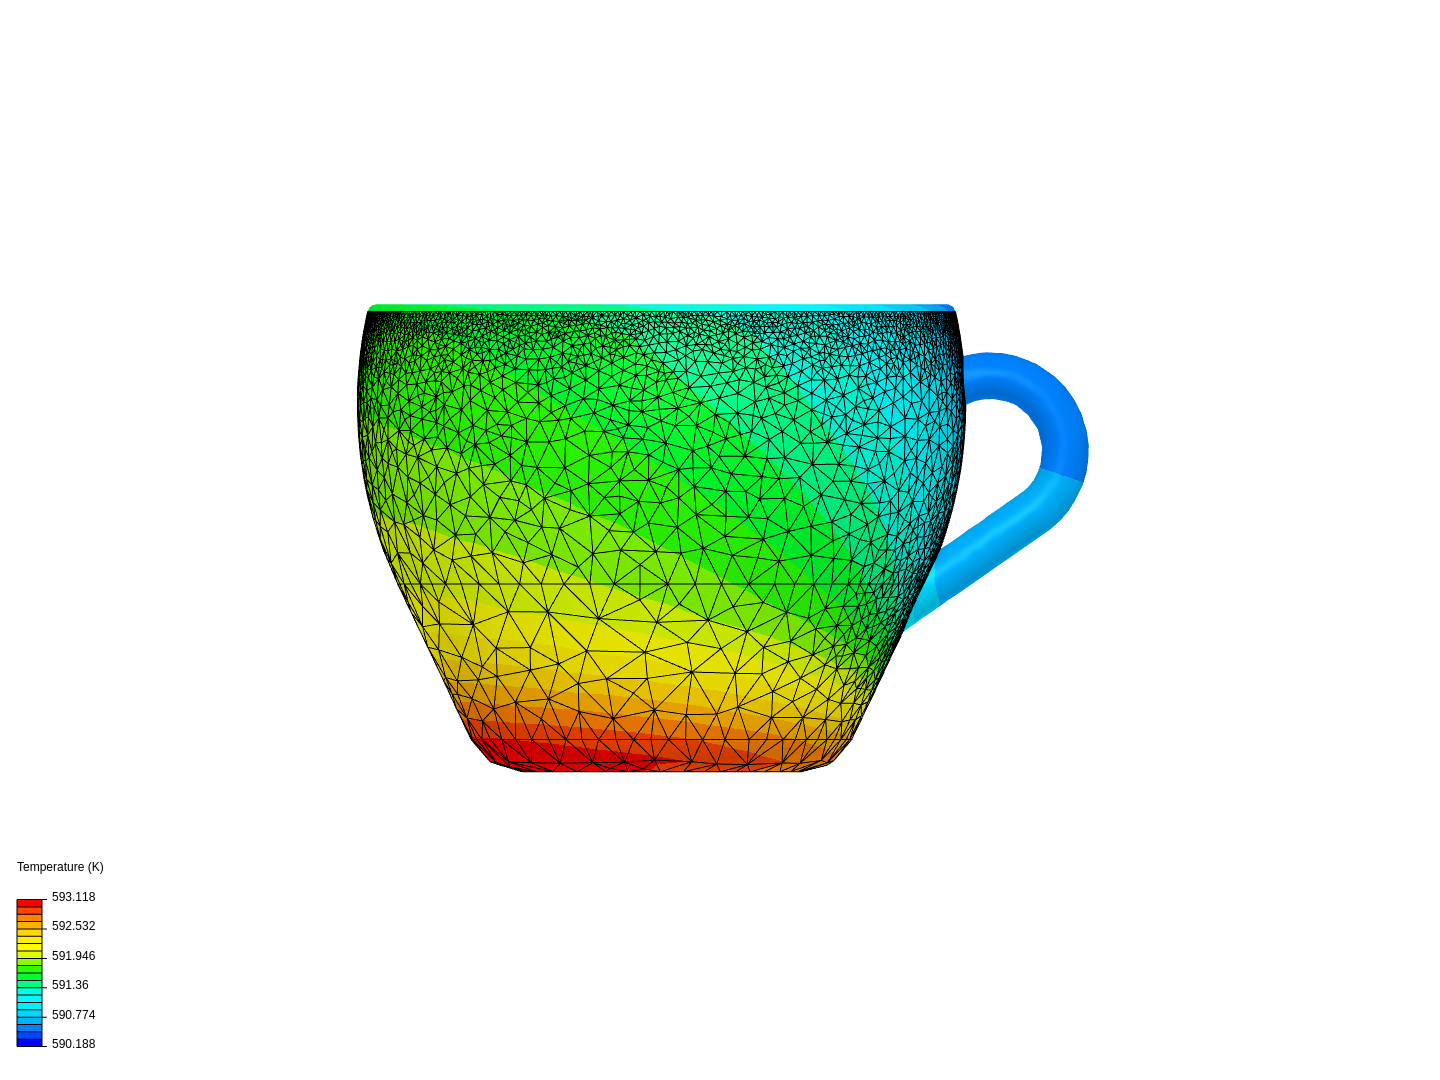 Coffee Mug Thermal Test image